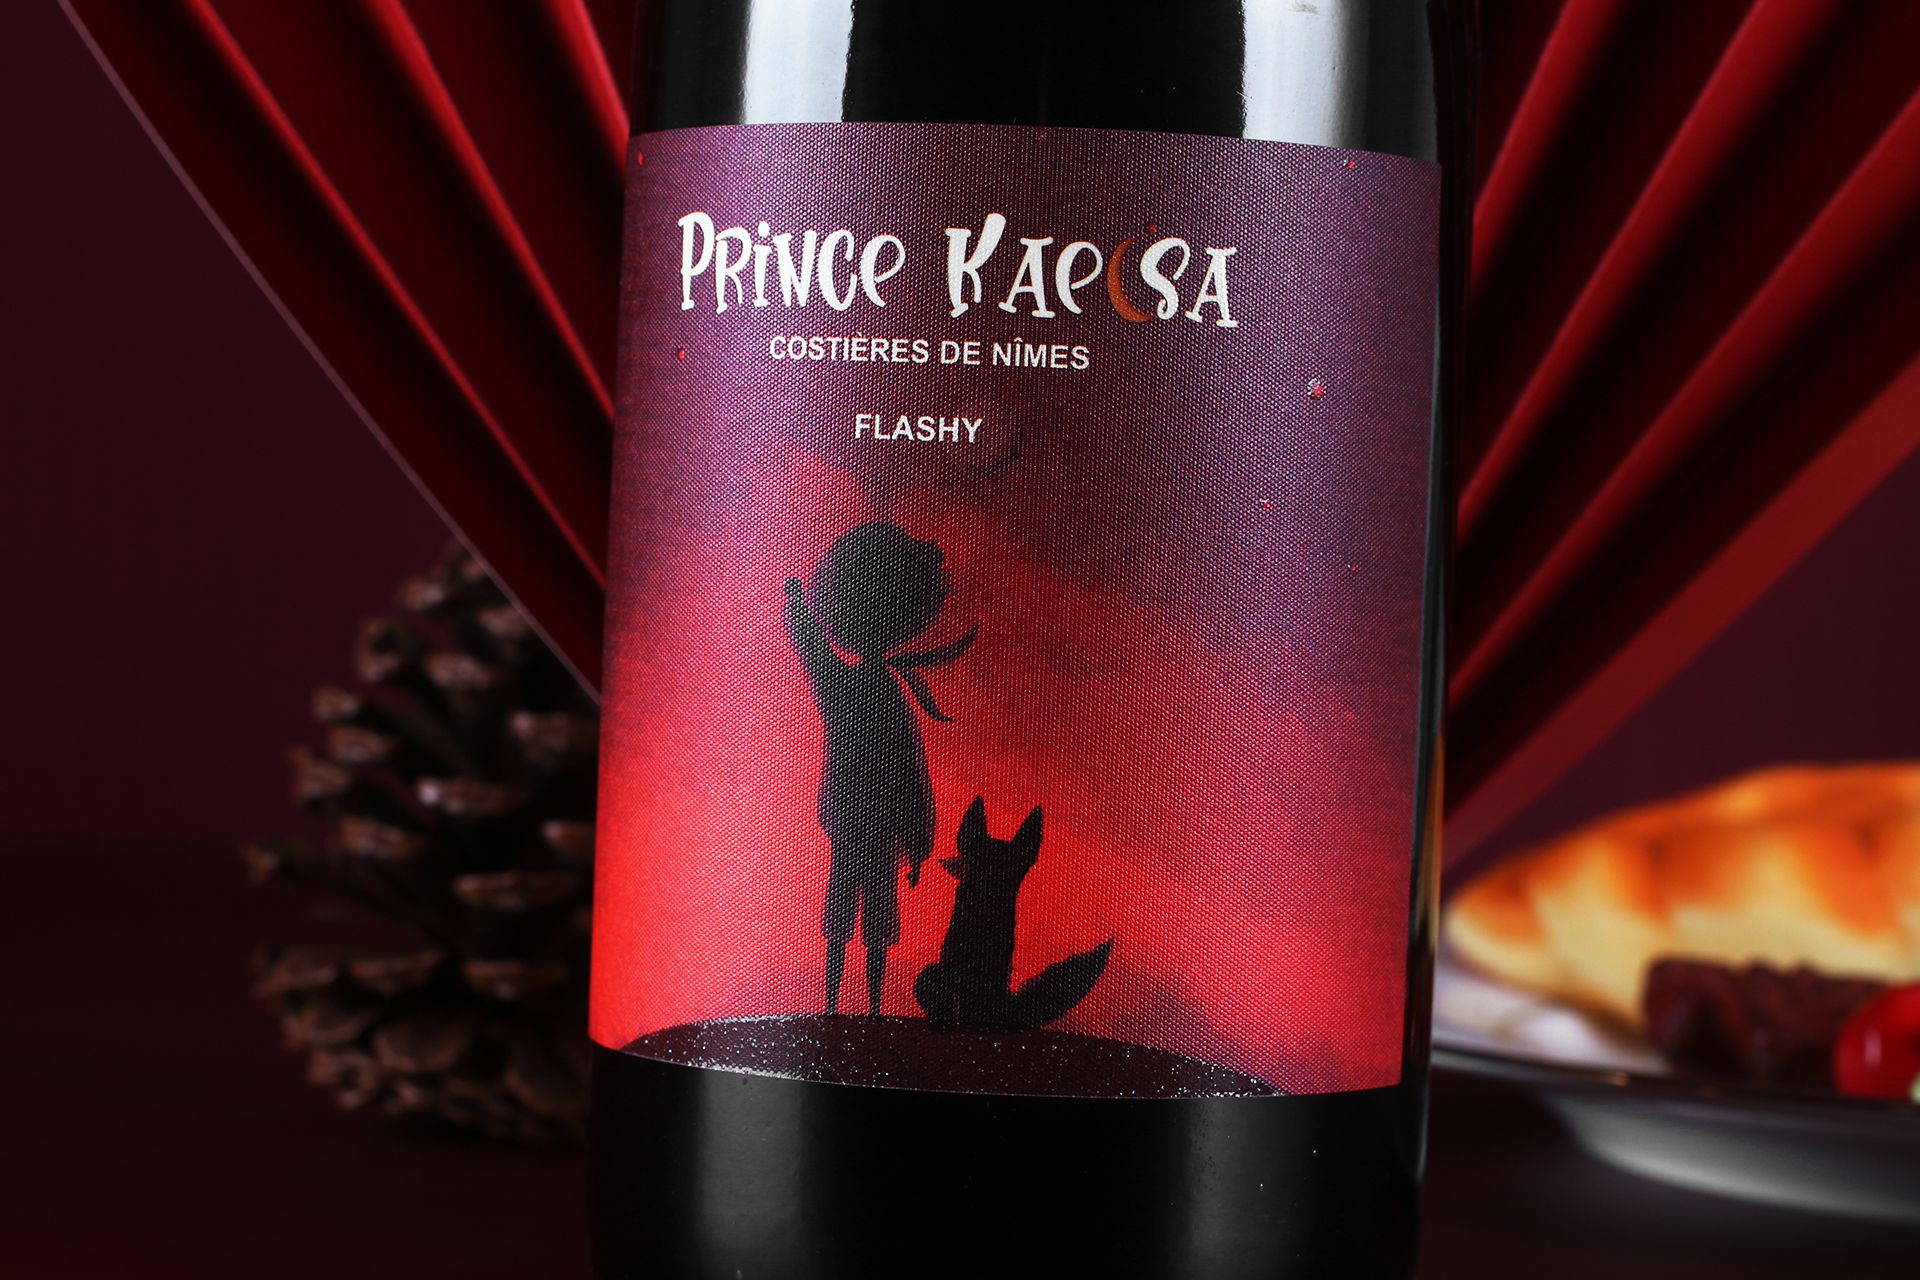 【凯尔撒王子·浮华红葡萄酒】Prince Kaelsa Flashy